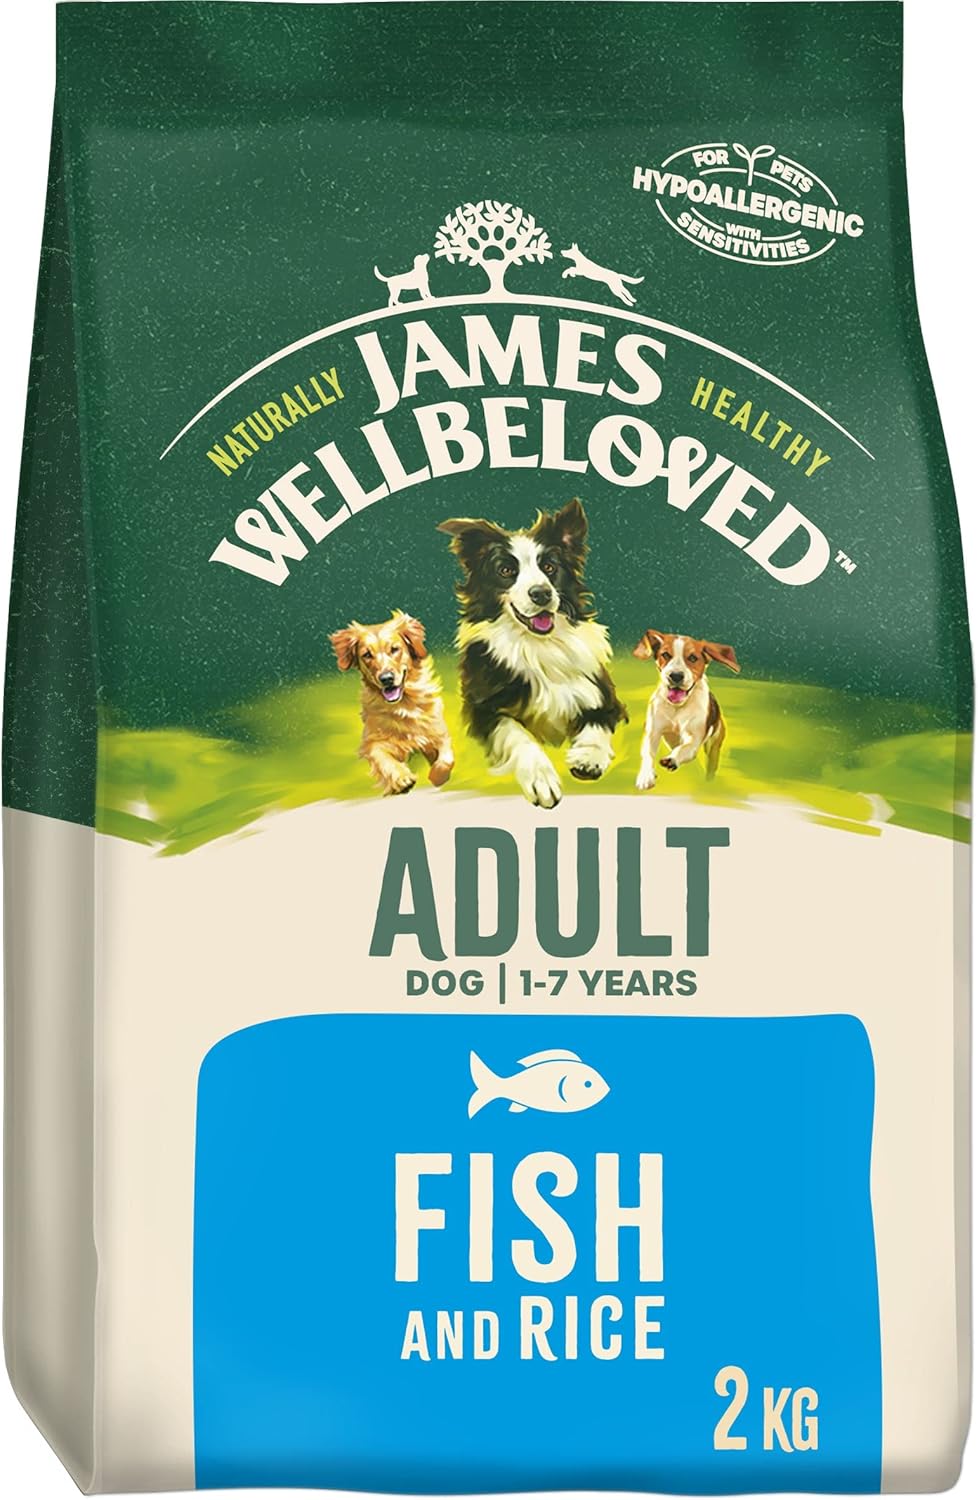 James Wellbeloved Adult Fish & Rice 2 kg Bag, Hypoallergenic Dry Dog Food?02JWAF2